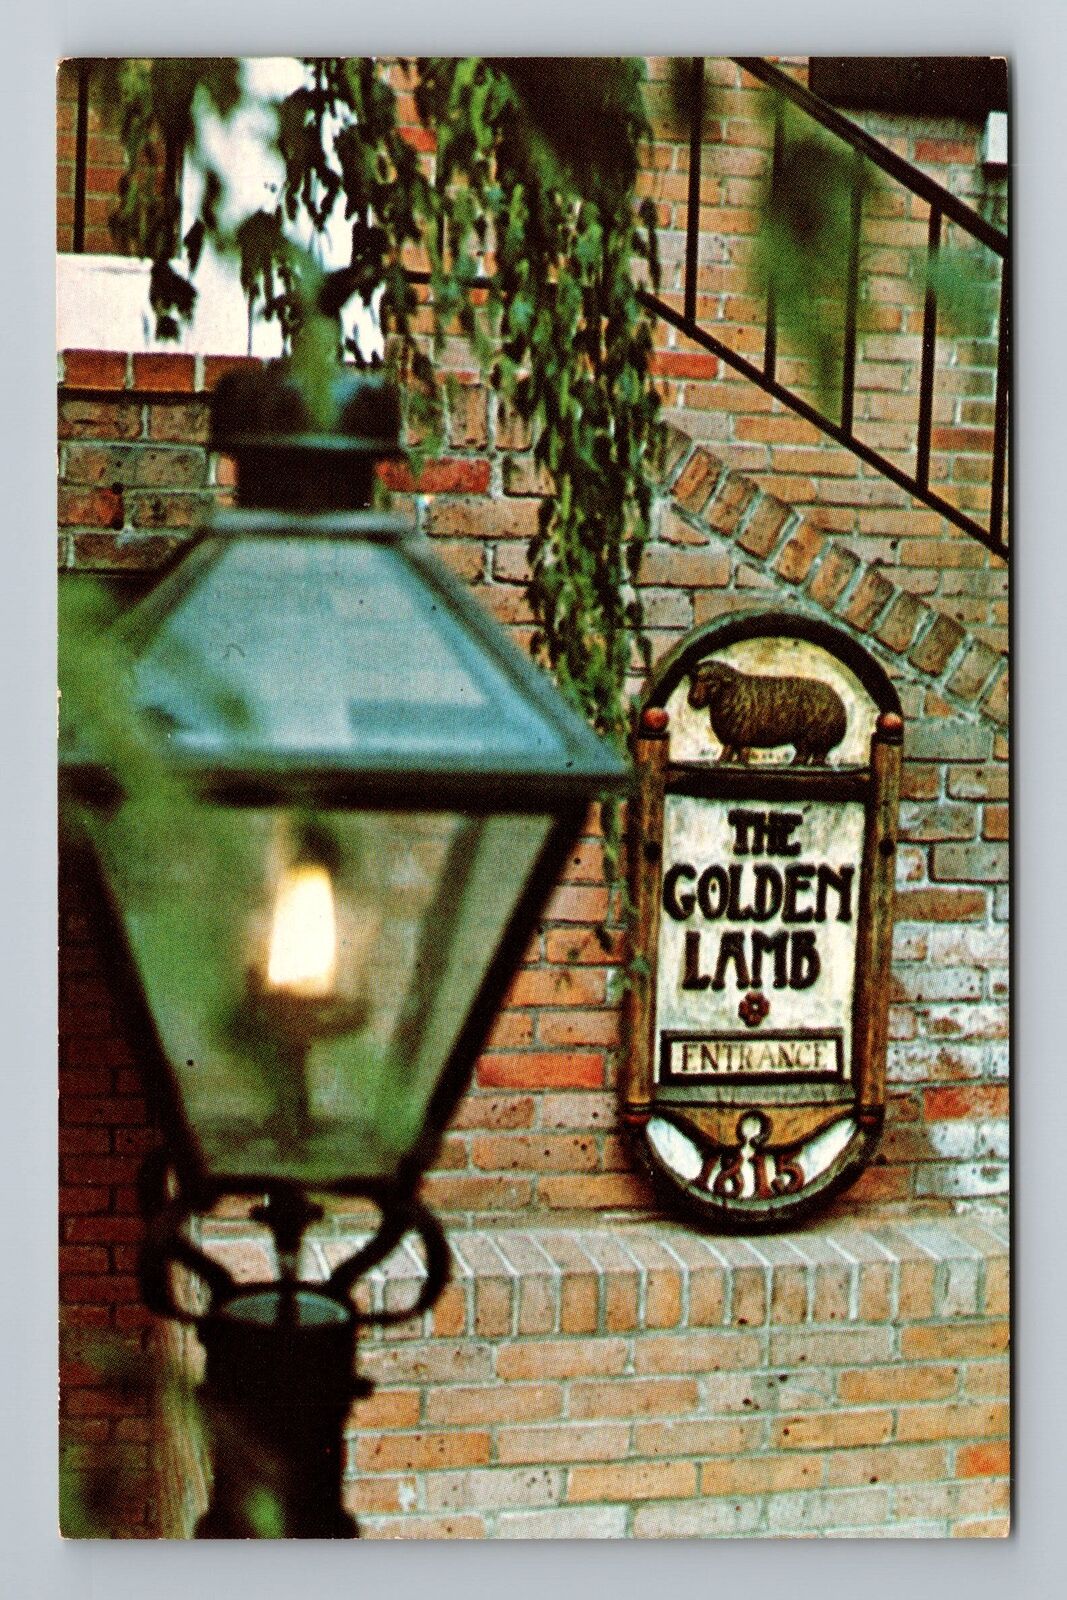 Lebanon OH-Ohio, The Golden Inn, Oldest Inn, Advertisment, Vintage Postcard